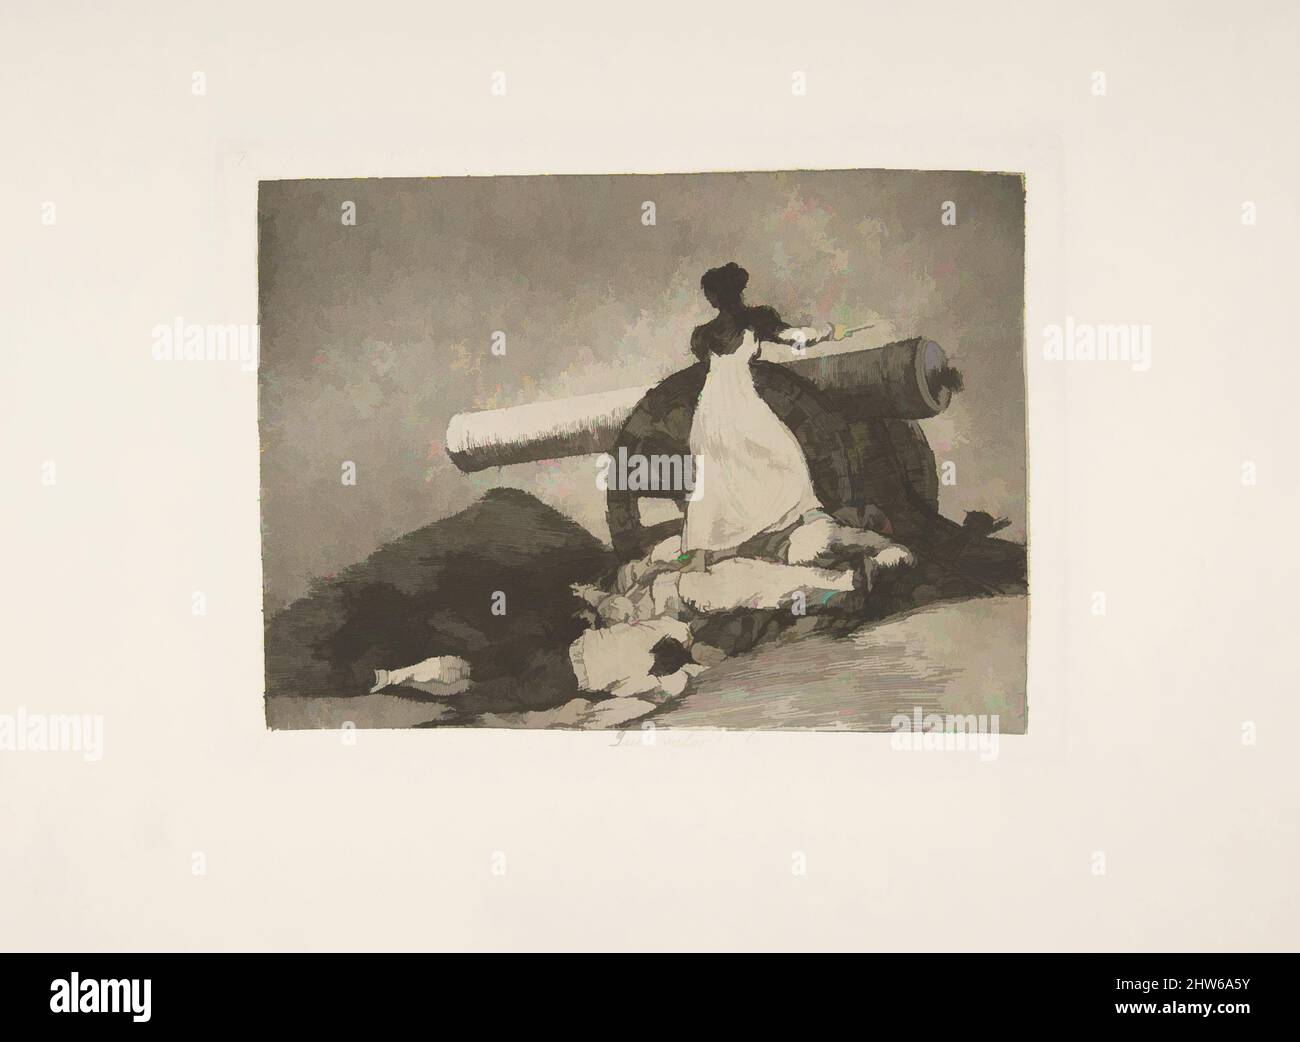 Art inspiré par la planche 7 de 'les désastres de la guerre' (Los Desastres de la Guerra): Quel courage! (Que valor!), 1810 ( publié en 1863), Etching, aquatint, drypoint, burin et burnisher, Plaque : 6 x 8 3/16 po. (15,3 x 20,8 cm), Prints, Goya (Francisco de Goya y Lucientes) (espagnol, oeuvres classiques modernisées par Artotop avec une touche de modernité. Formes, couleur et valeur, impact visuel accrocheur sur l'art émotions par la liberté d'œuvres d'art d'une manière contemporaine. Un message intemporel qui cherche une nouvelle direction créative. Artistes qui se tournent vers le support numérique et créent le NFT Artotop Banque D'Images